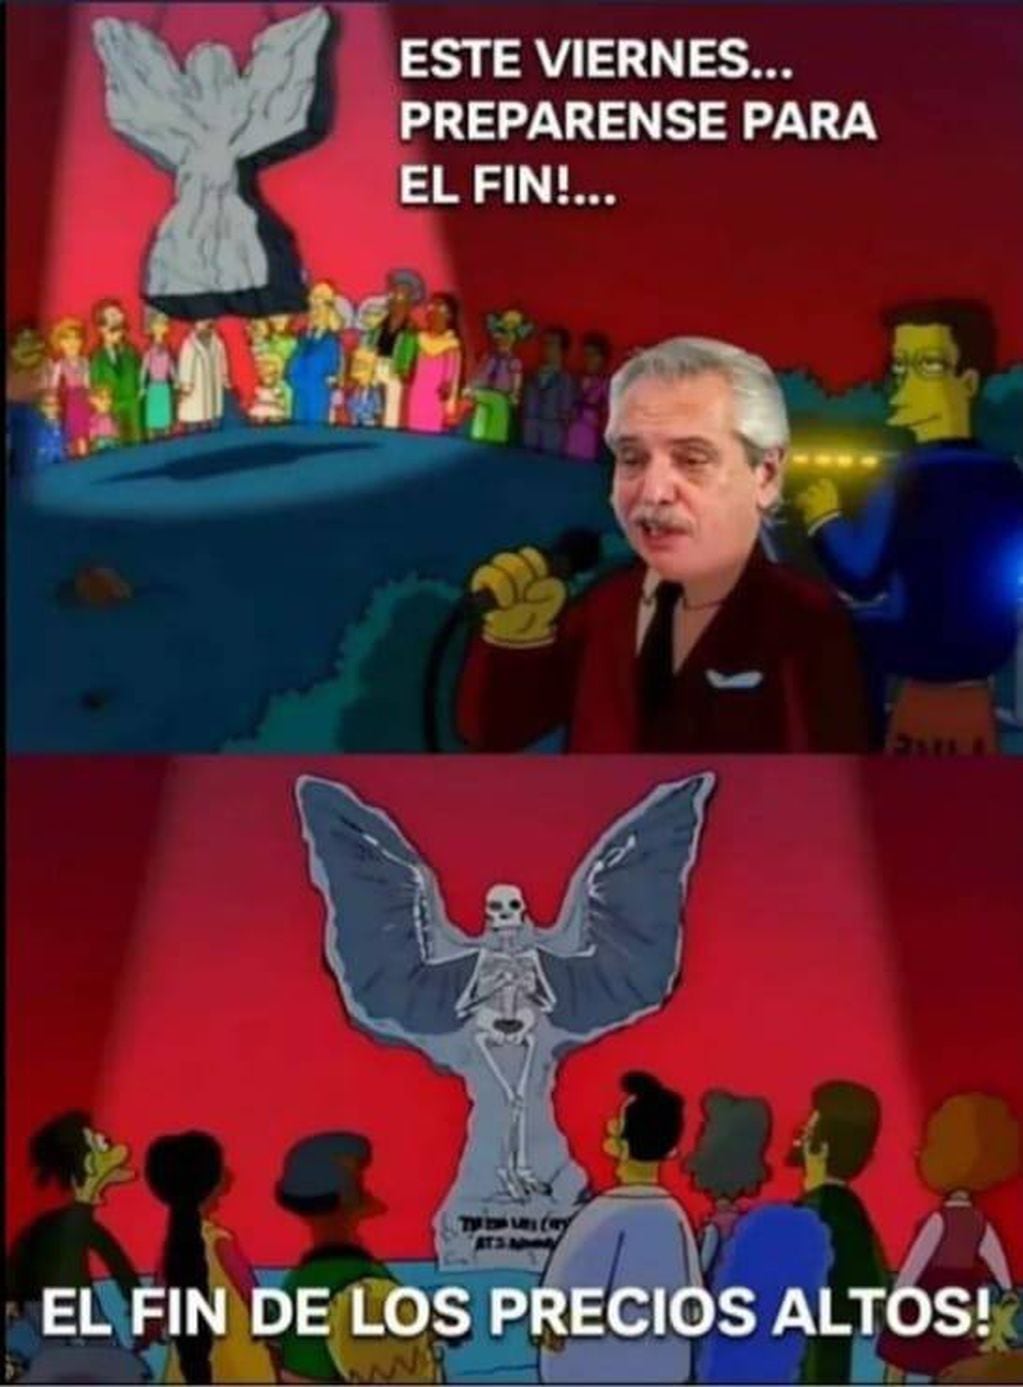 Otro meme que cita un capítulo de Los Simpson para satirizar sobre lo mencionado por Alberto Fernández.